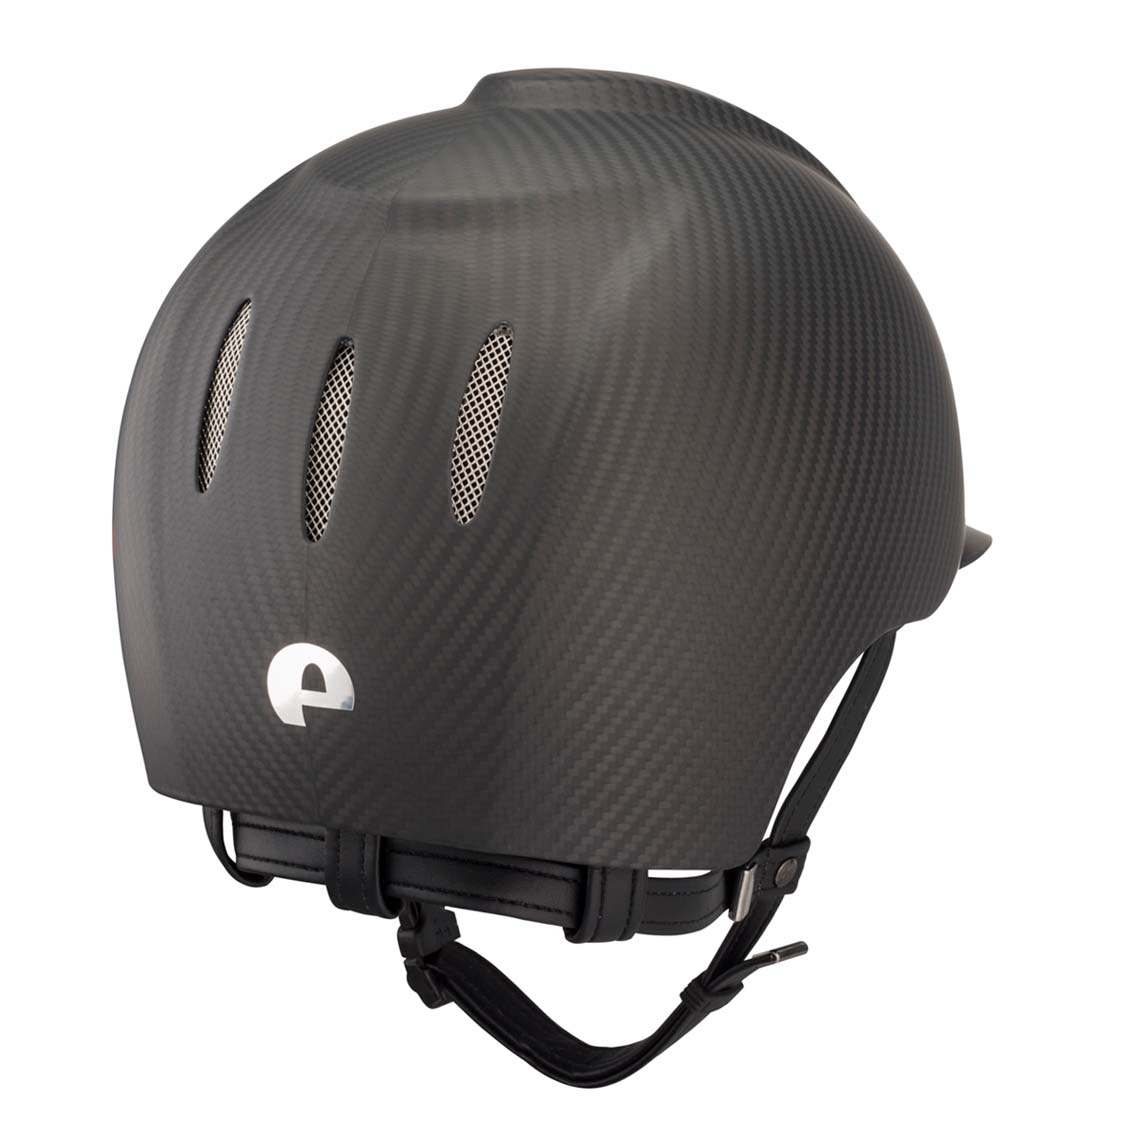 Casco in carbonio E-light Nero opaco, con visiera nera opaca e griglia in acciaio | El gaucho sport